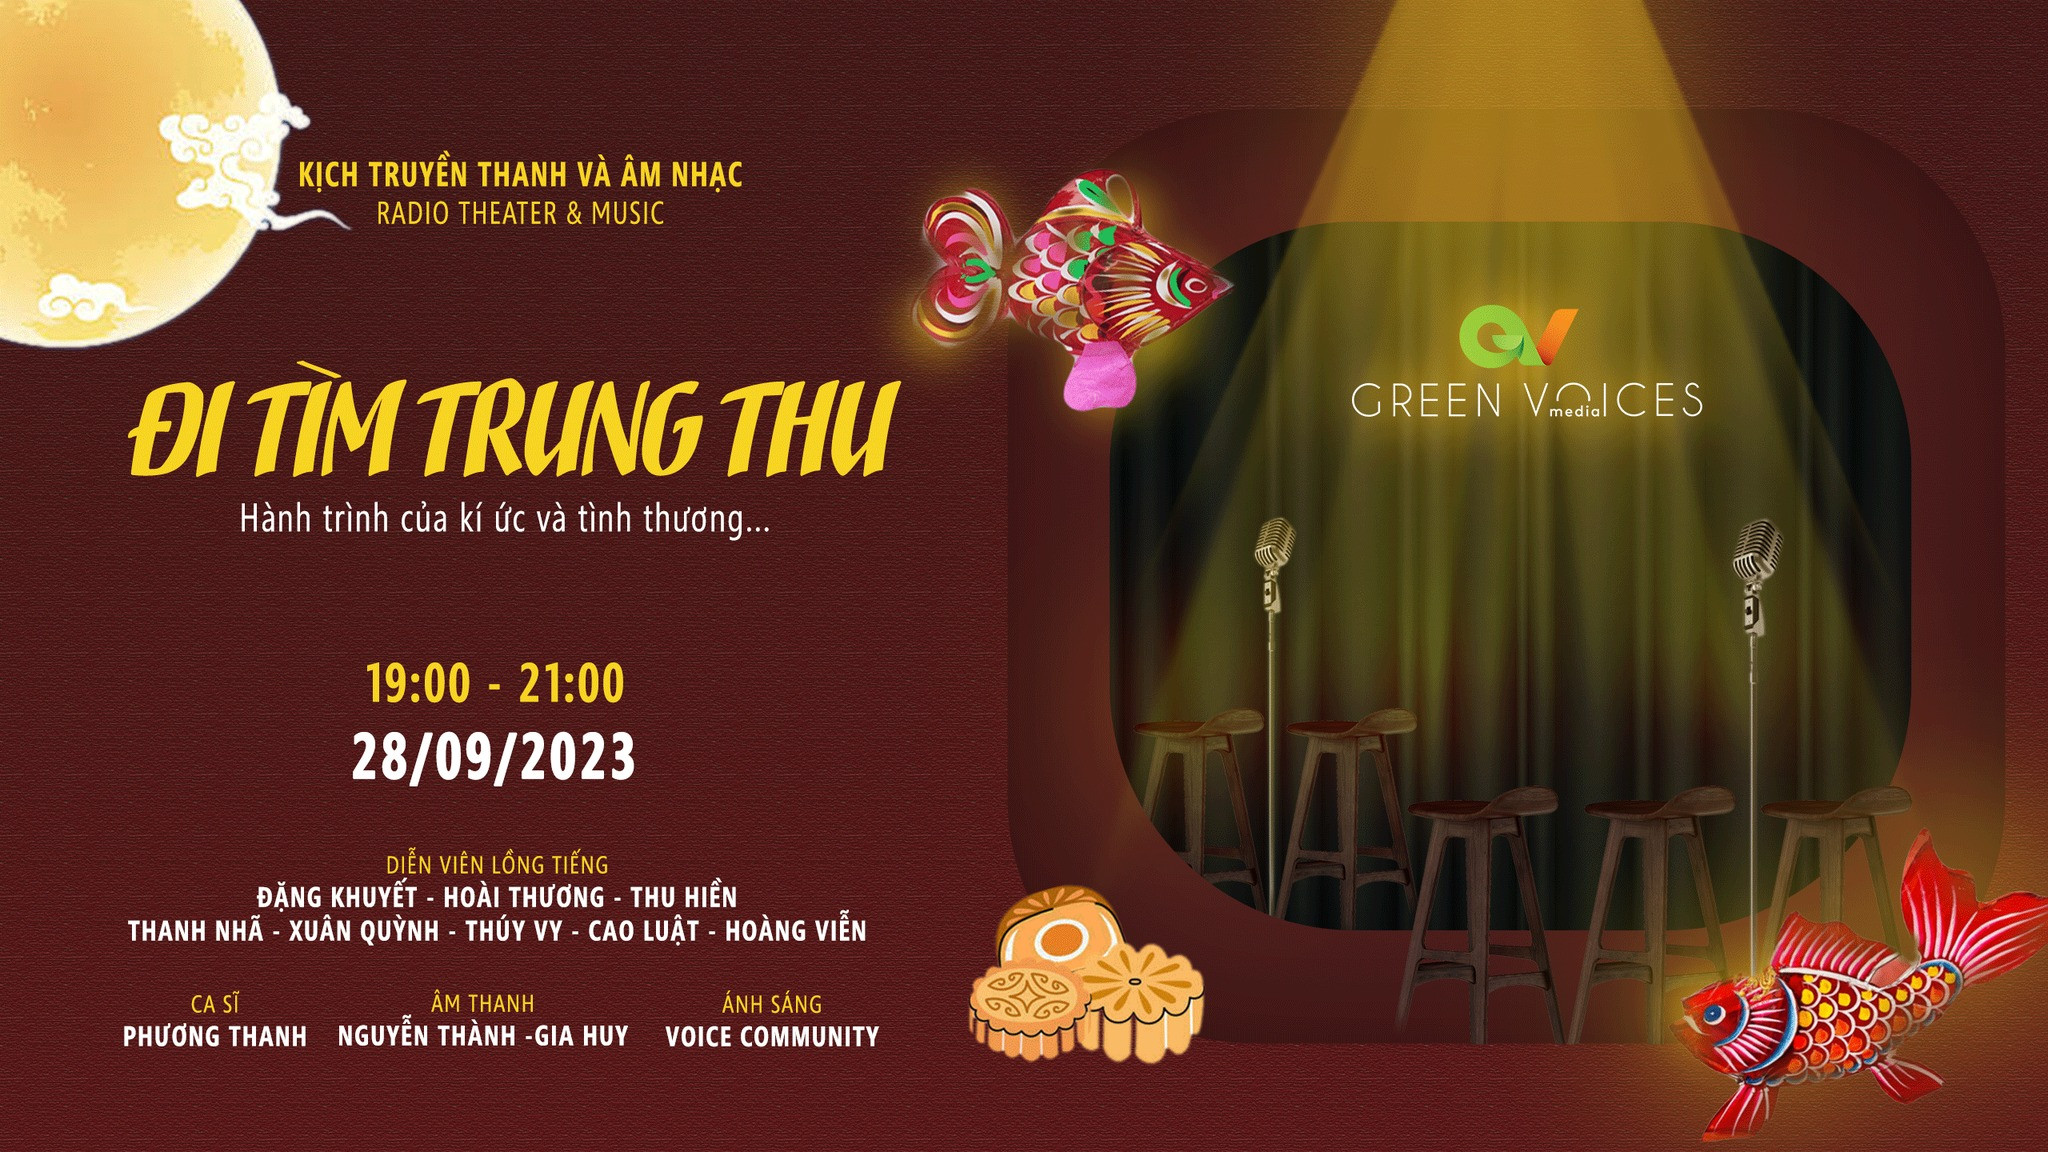 "ĐI TÌM TRUNG THU" - ĐÊM DIỄN KỊCH TRUYỀN THANH & ÂM NHẠC 28/09/23 đến từ GREEN Voices